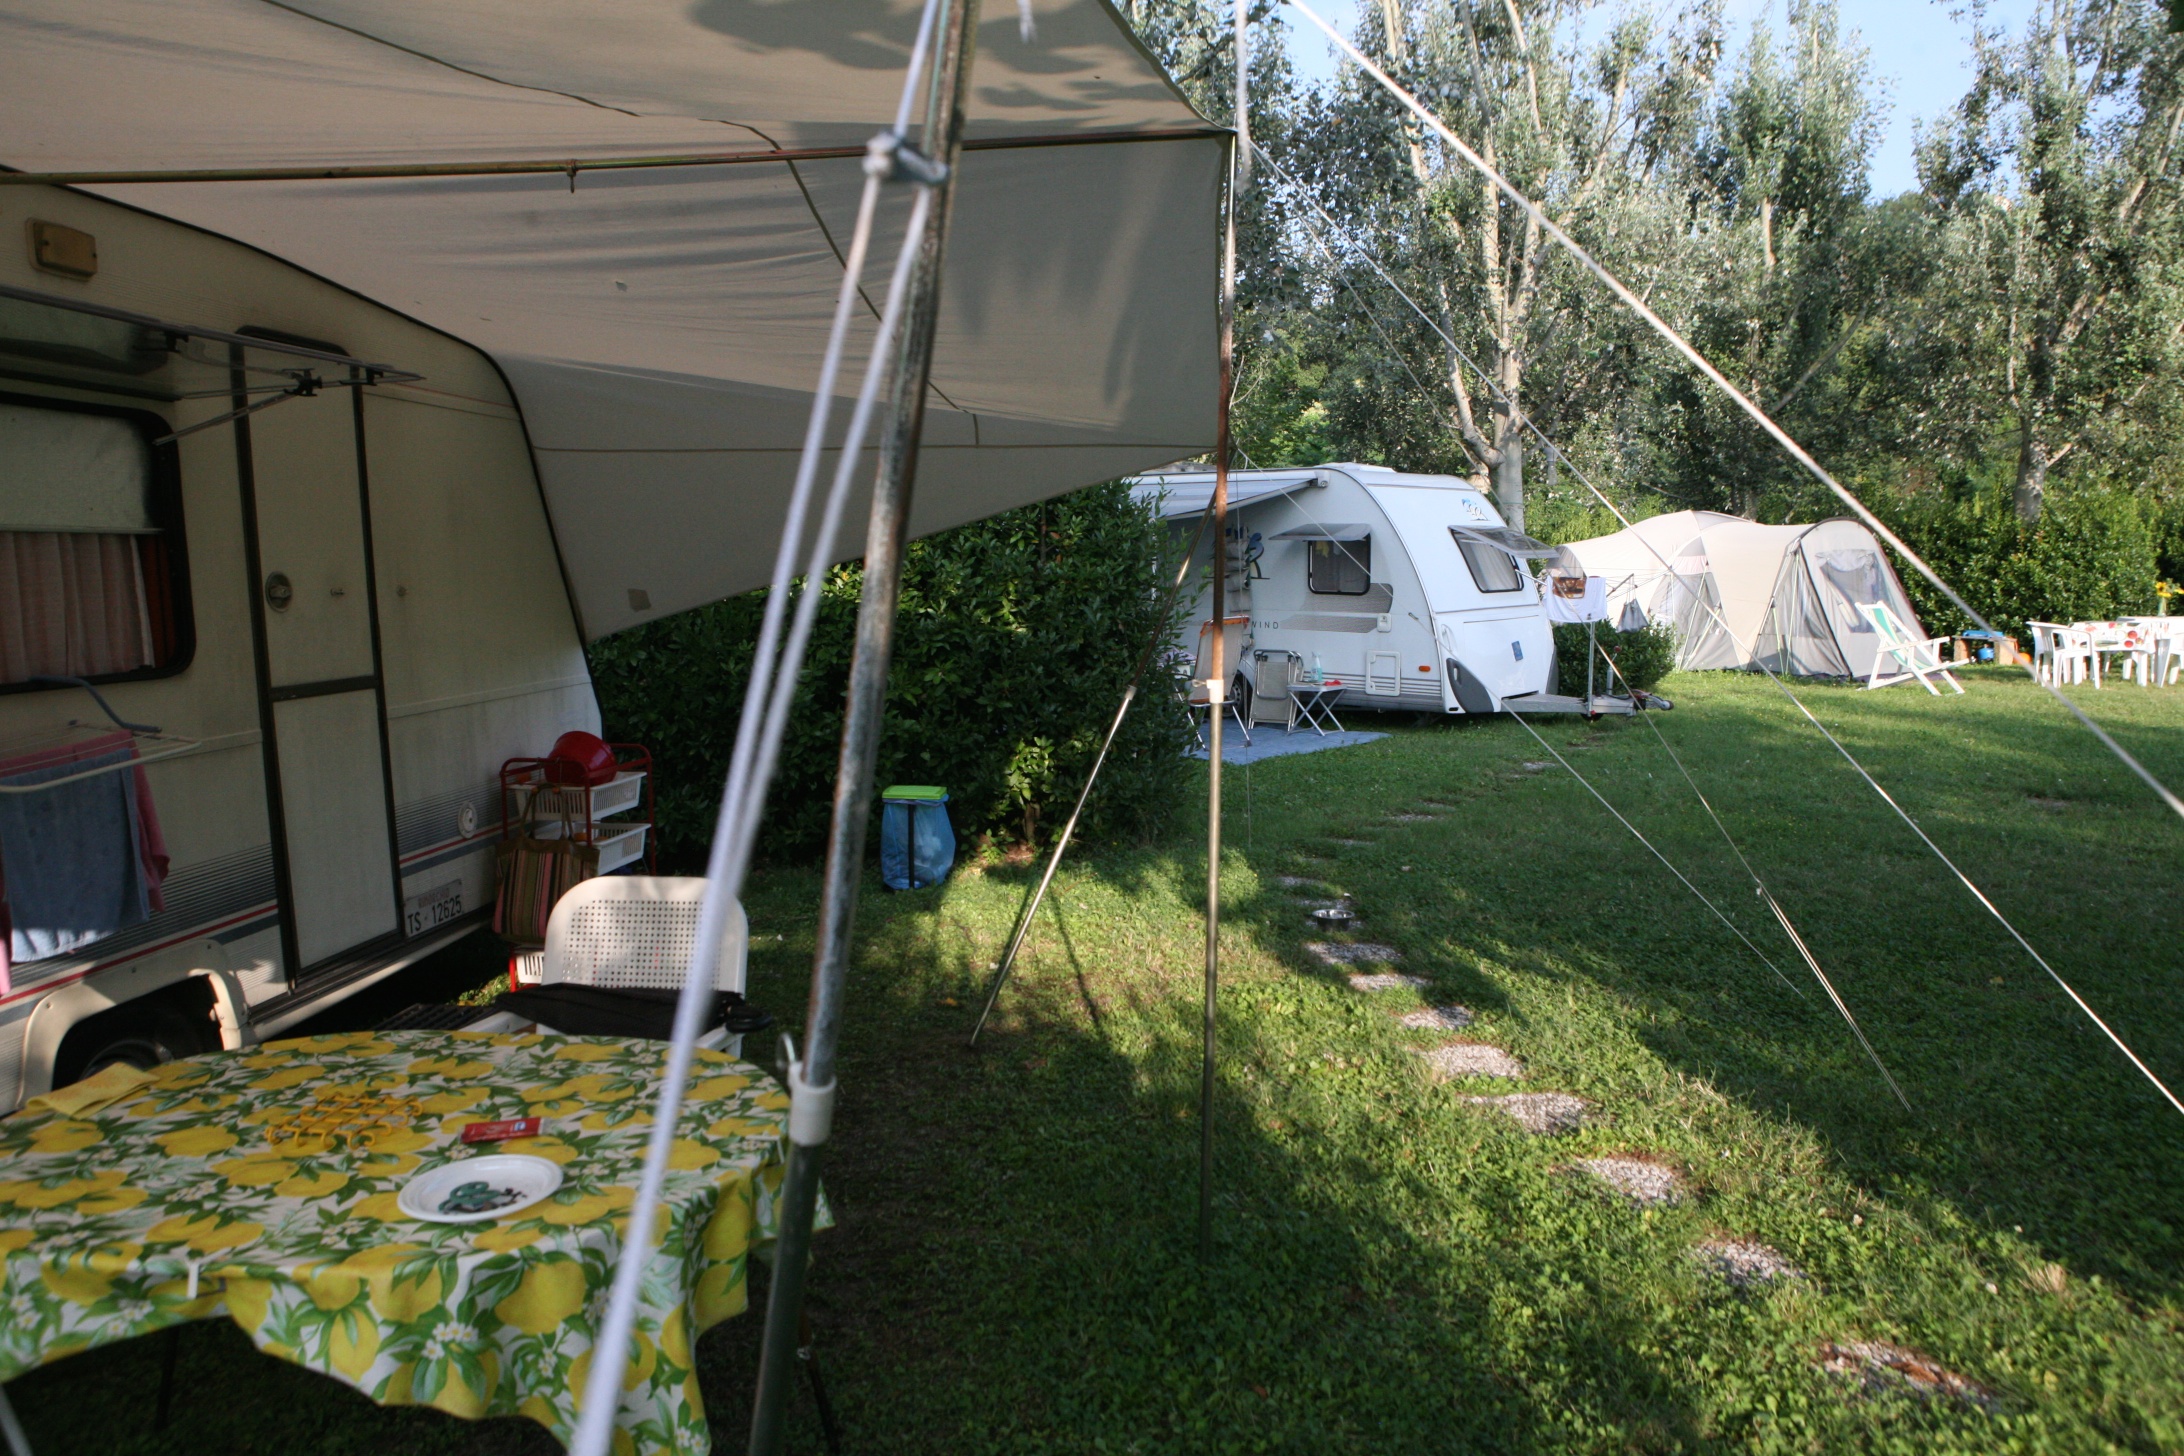 L'immagine mostra delle roulotte in un campeggio